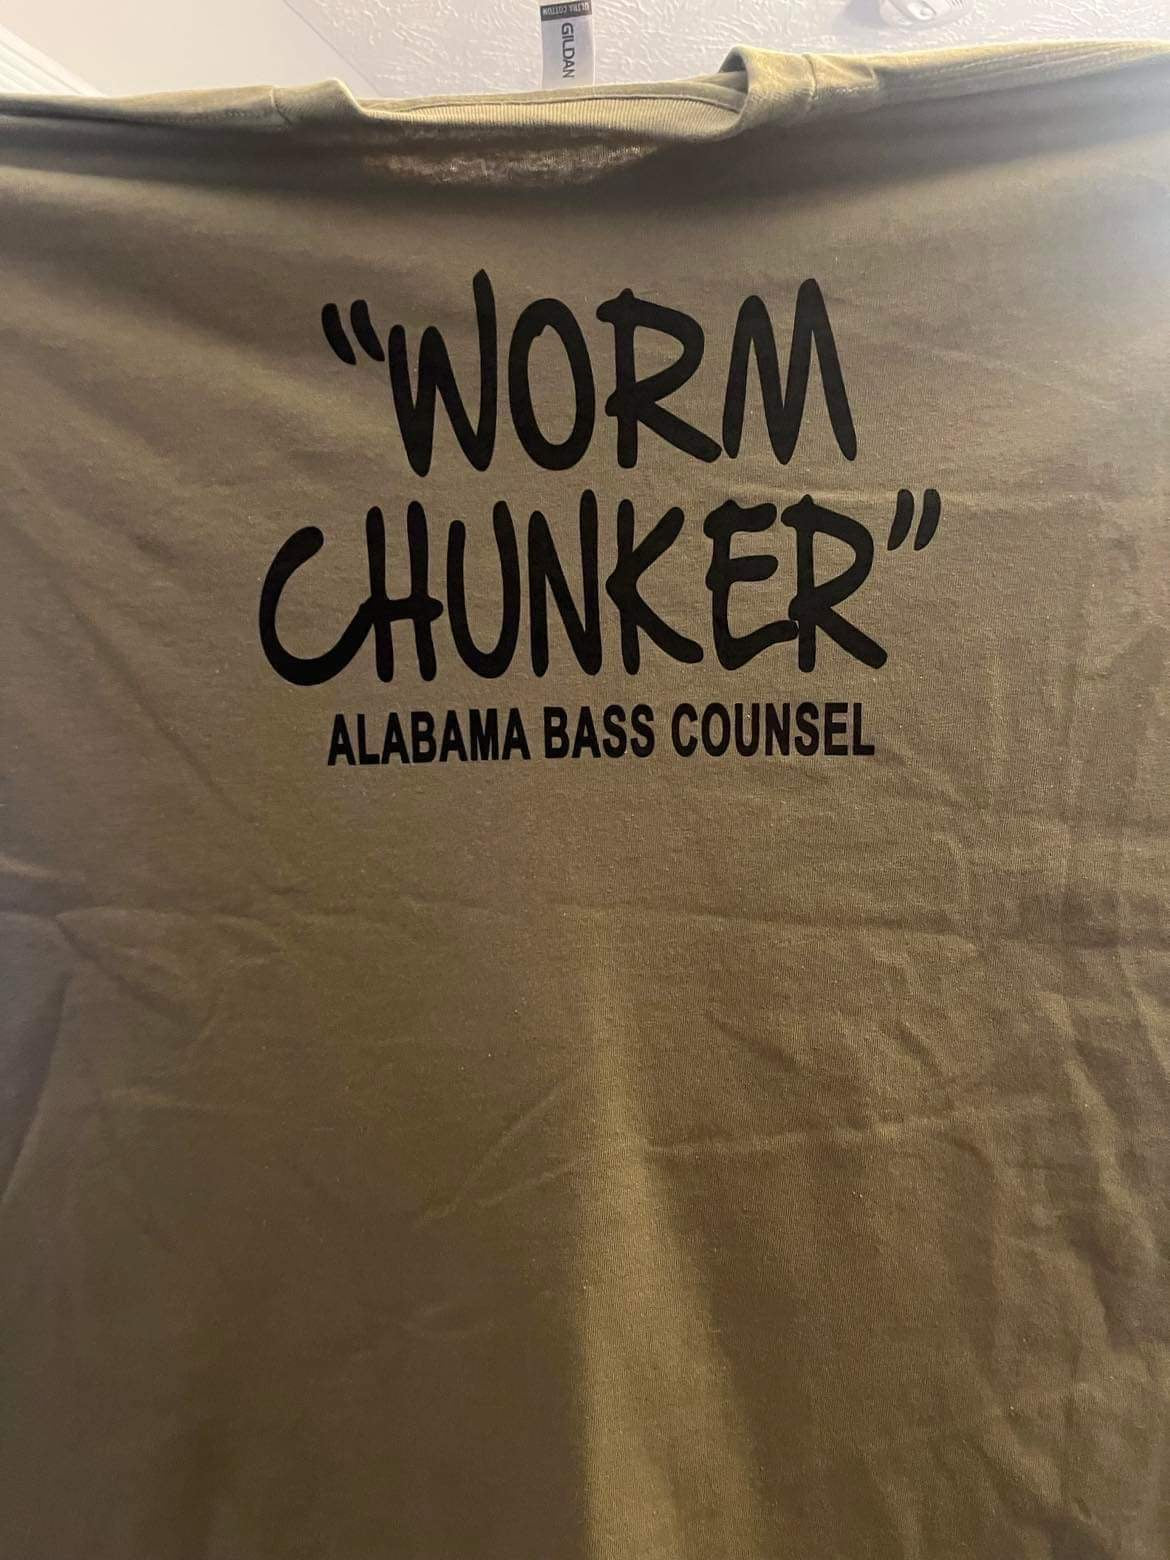 "WORM CHUNKER" Alabama Bass Counsel